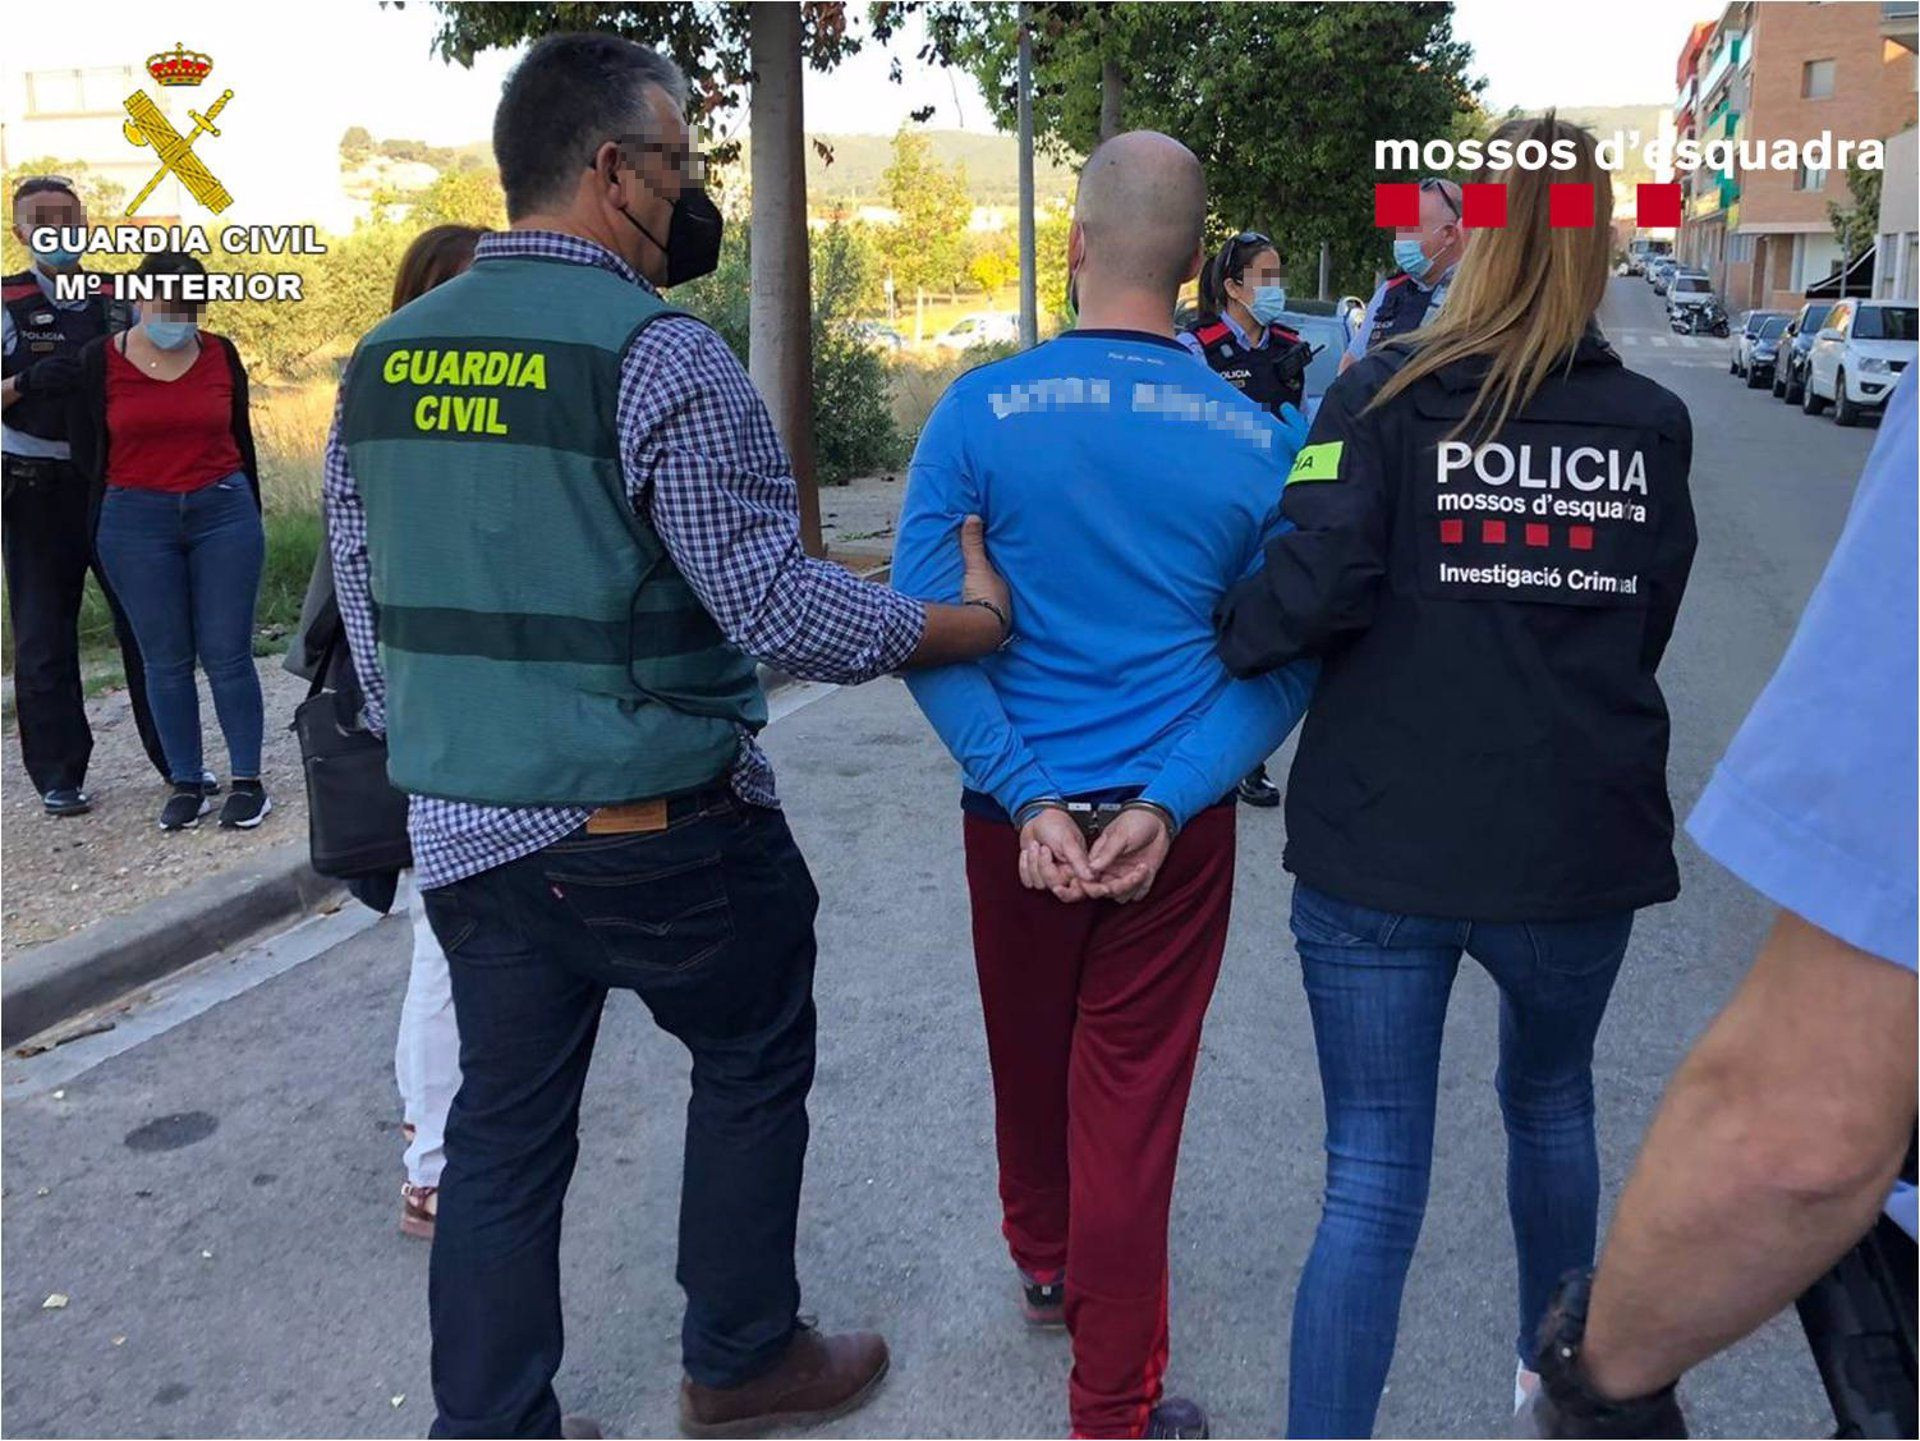 Guardia Civil y Mossos dEsquadra detienen a 14 miembros de un grupo criminal especializado en robos mediante butrones y alunizajes / GUARDIA CIVIL